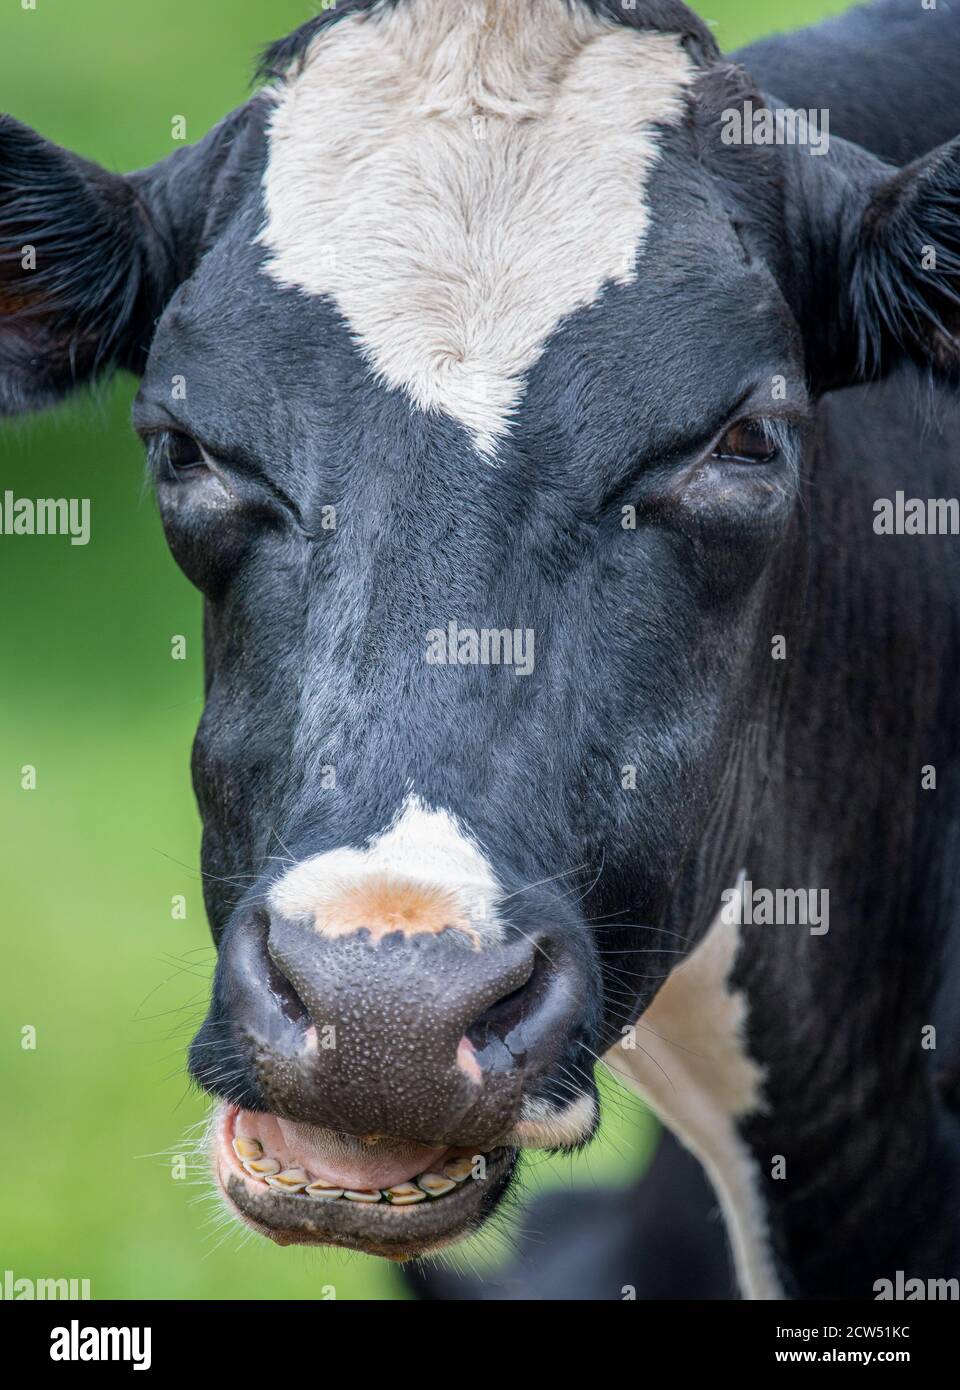 Une photo de gros plan d'une vache noire et blanche avec sa bouche ouverte Banque D'Images